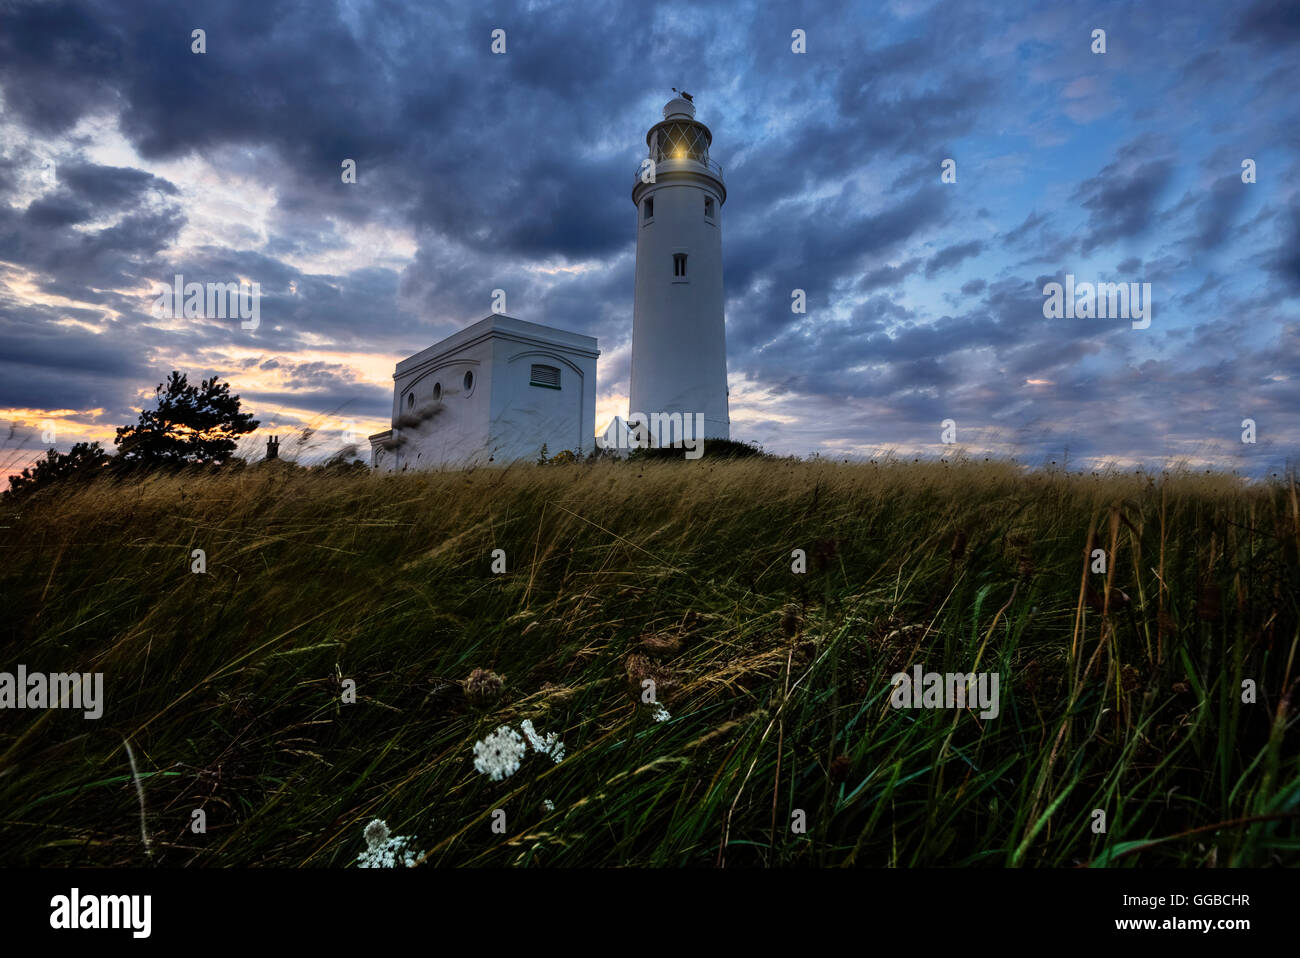 Hurst Point Lighthouse, Solent, Hampshire, England, UK Stock Photo